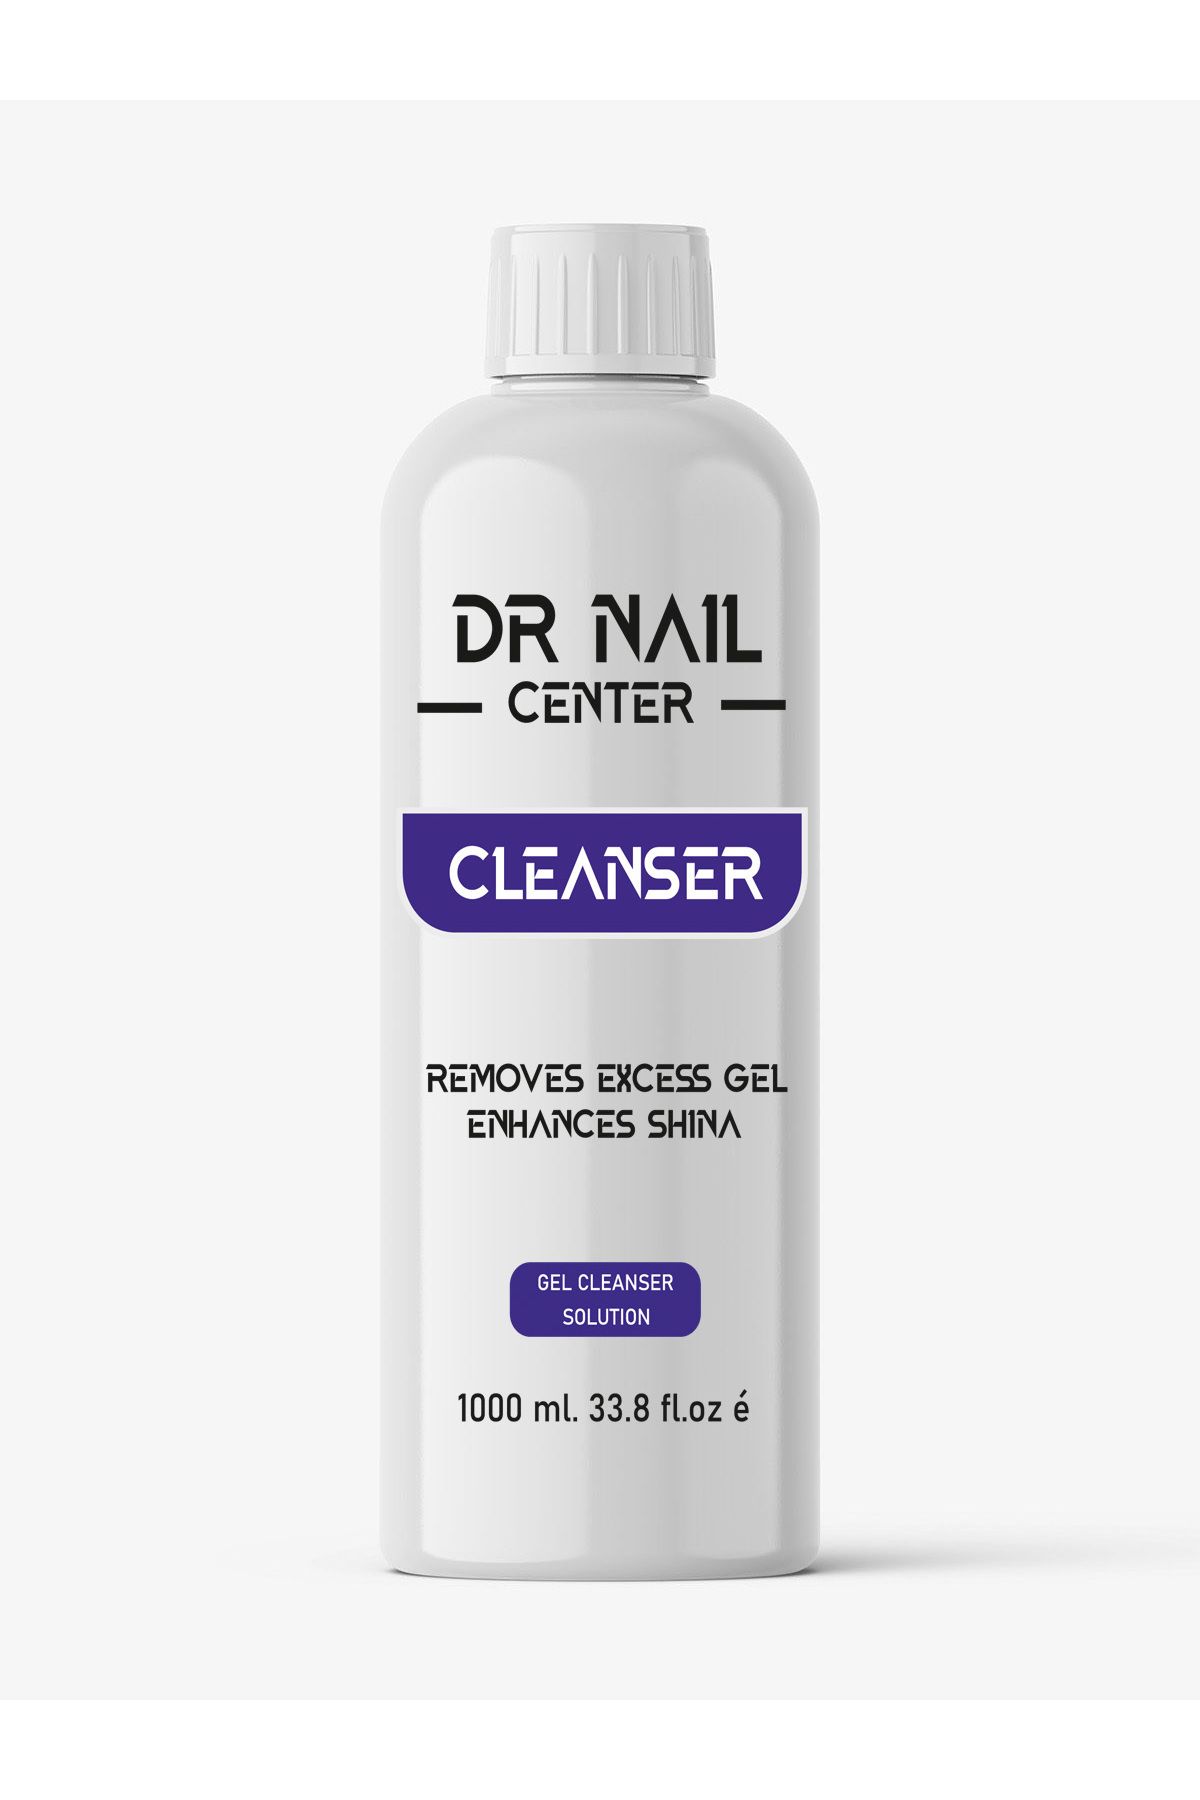 Dr.Nail Center Protez Tırnak Cleanser Germany 1000 ml.